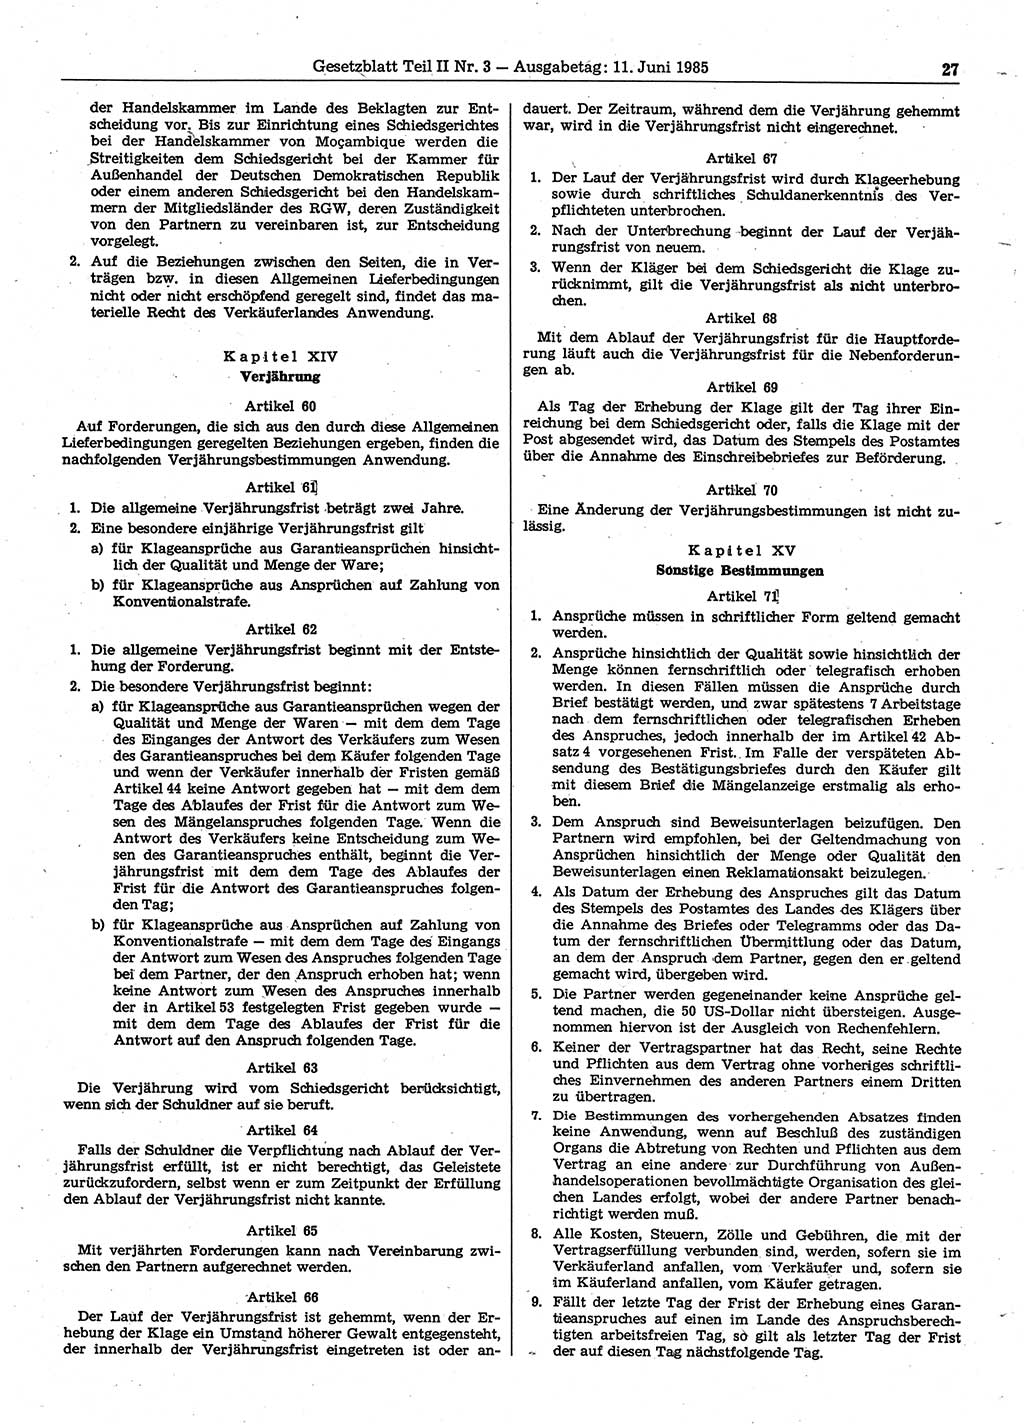 Gesetzblatt (GBl.) der Deutschen Demokratischen Republik (DDR) Teil ⅠⅠ 1985, Seite 27 (GBl. DDR ⅠⅠ 1985, S. 27)